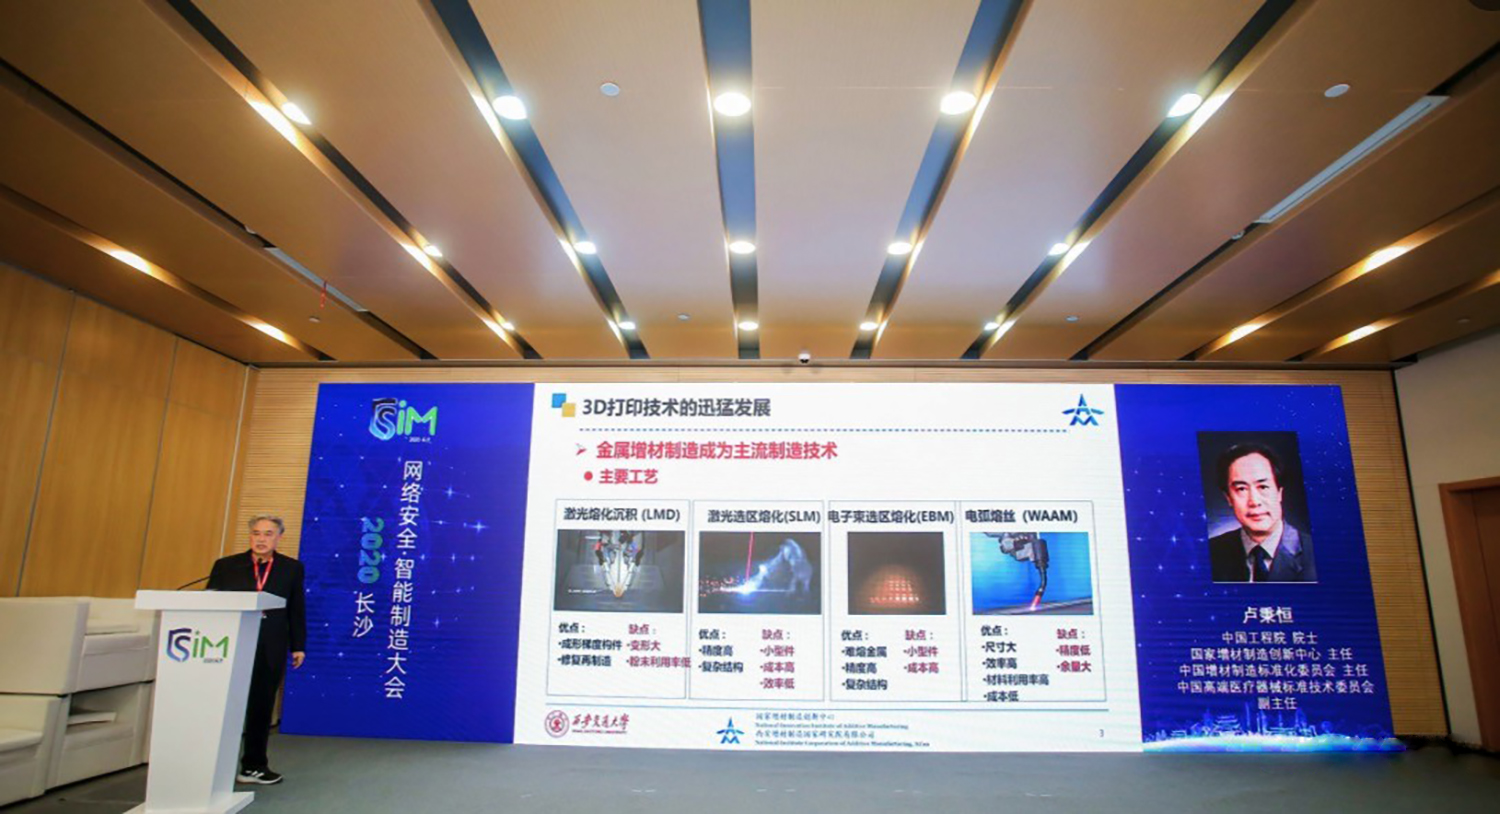 卢秉恒院士发表主旨演讲《中国3D打印现状与未来》